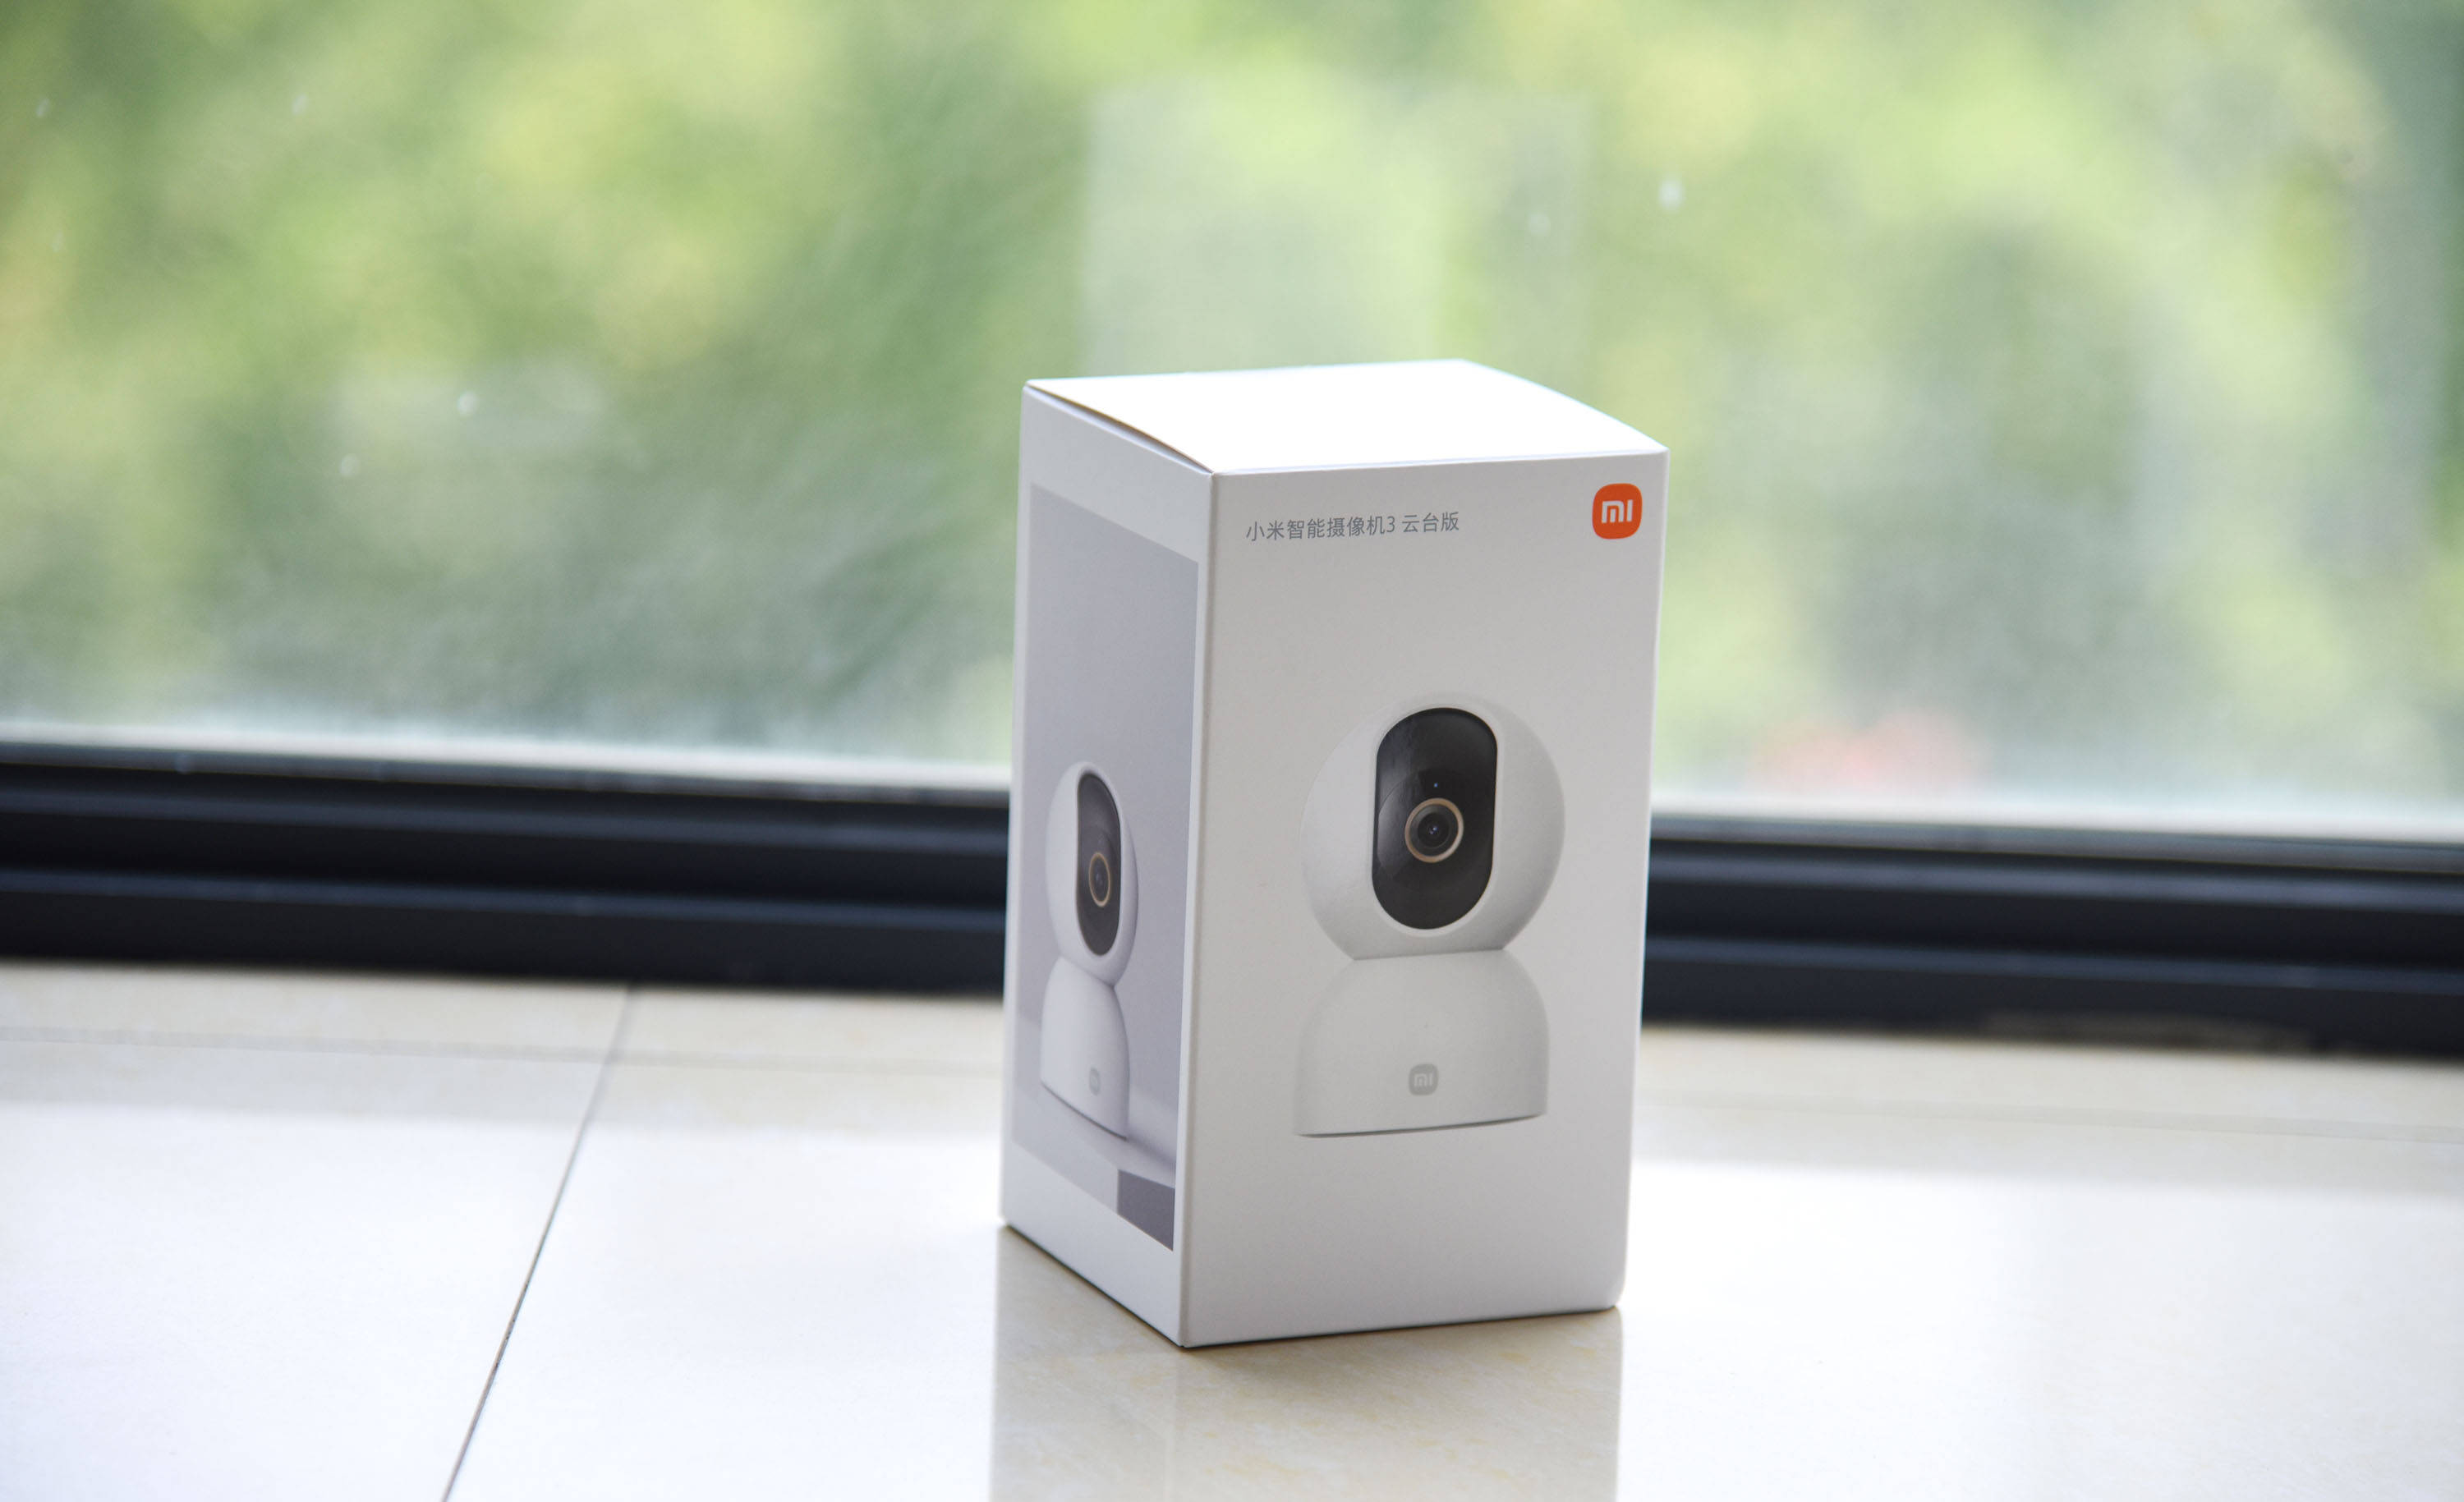 小米智能摄像机3云台版体验:远程监控联动检测 家庭安防新升级